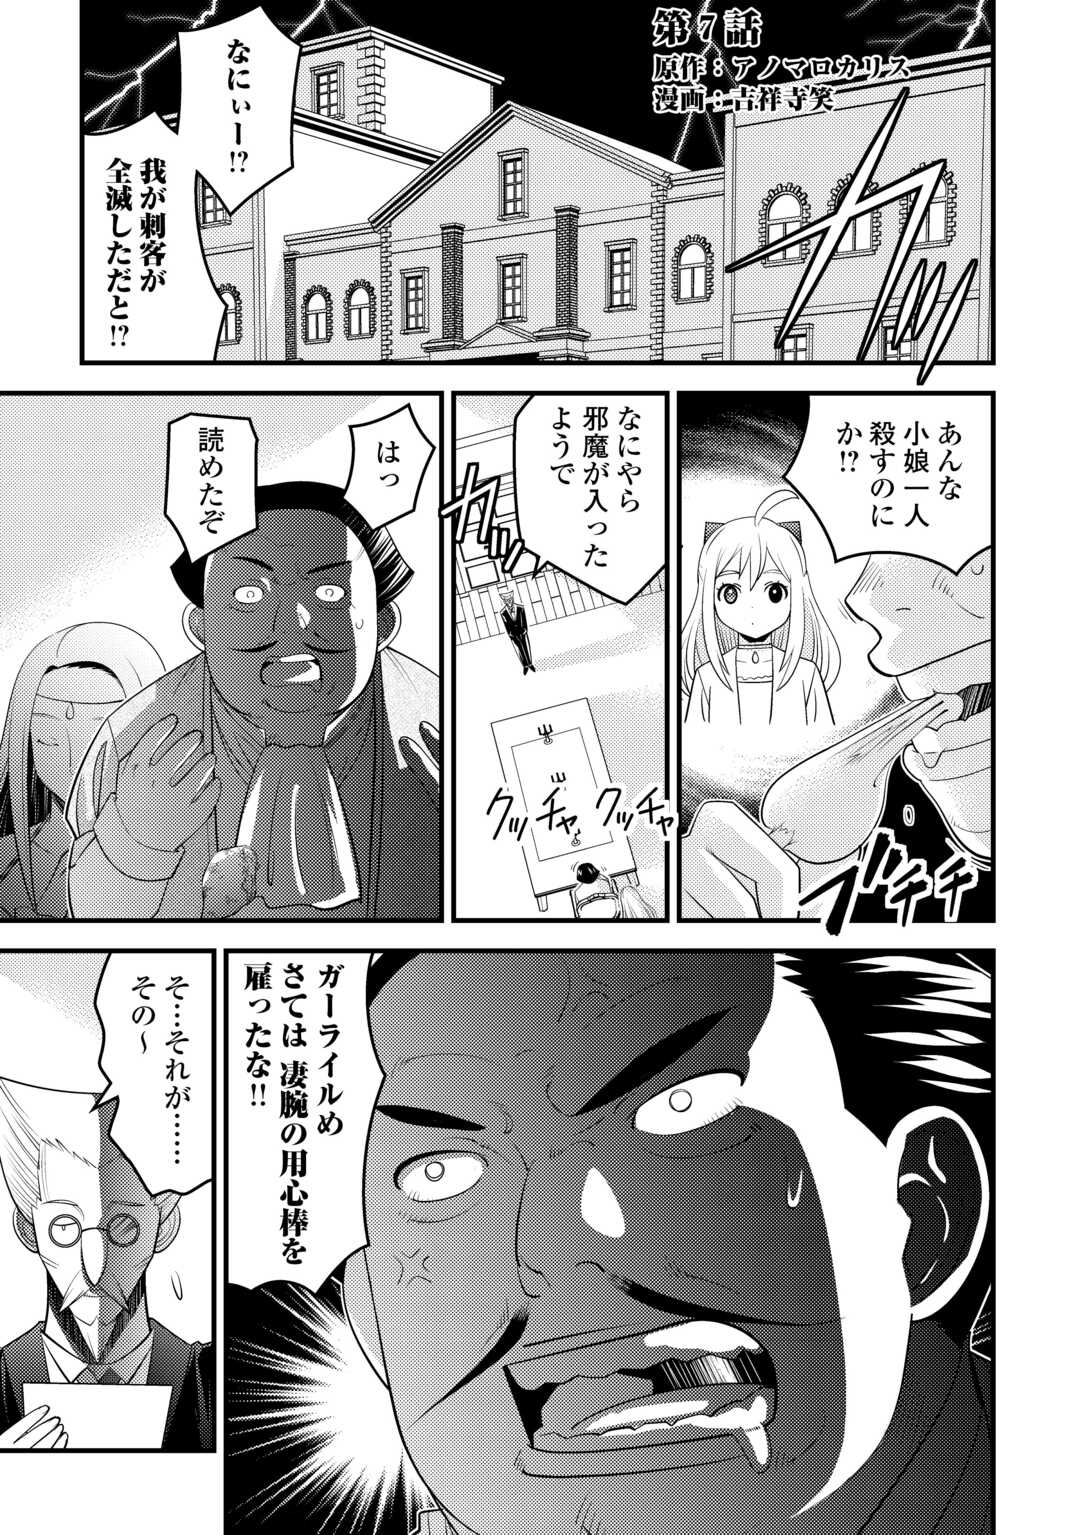 Makyou Sodachi no Zennou Boukensha wa Isekai de Suki Katte Ikiru!! – Oi Dashita Kuse ni Modotte Koidato? Sonna no Shiruka!! - Chapter 7 - Page 1